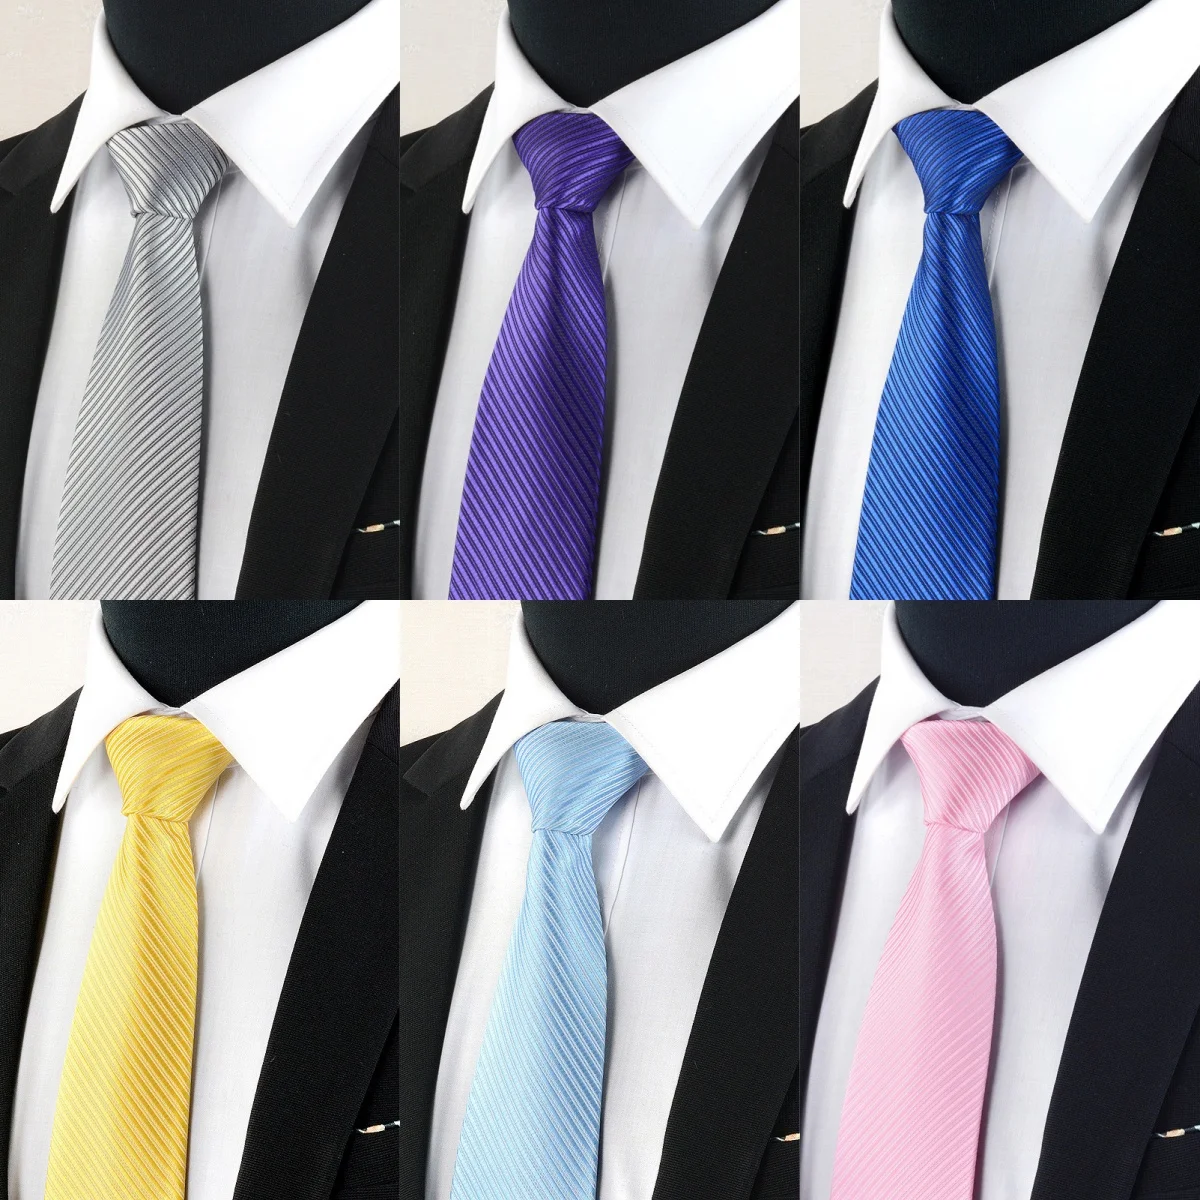 

8cm Casual Suits Tie Classic Striped Neck Ties Stripe Necktie For Business Wedding Tie Gentleman Shirt Groom Wedding Tie Gift